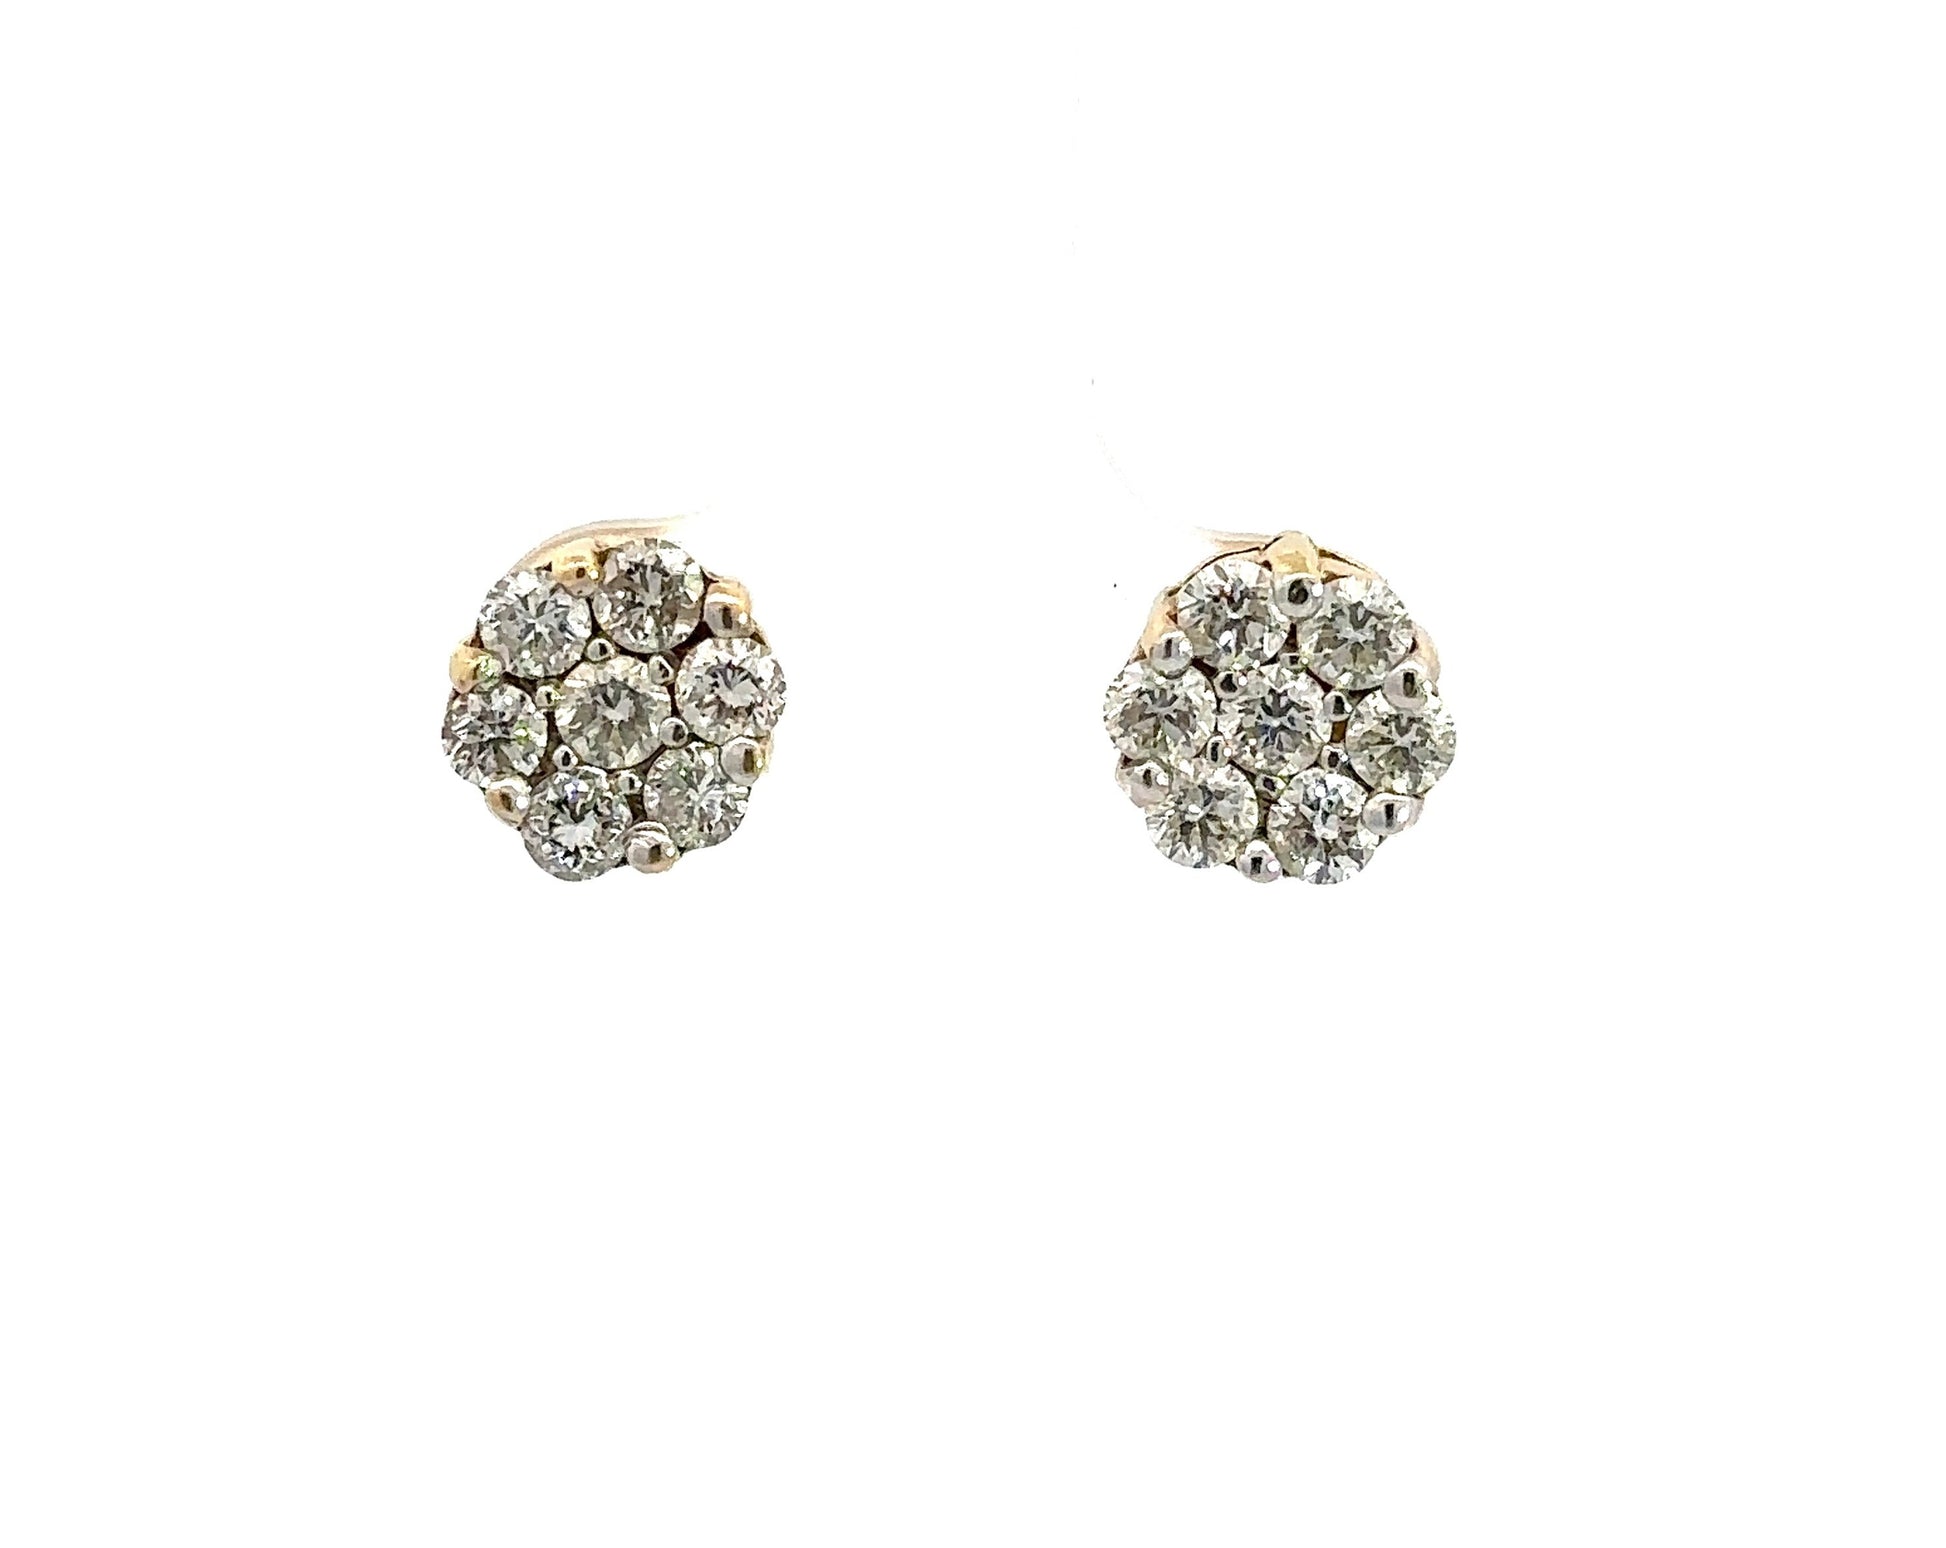 Diamond flower shaped earrings with 7 round diamonds in each ear.